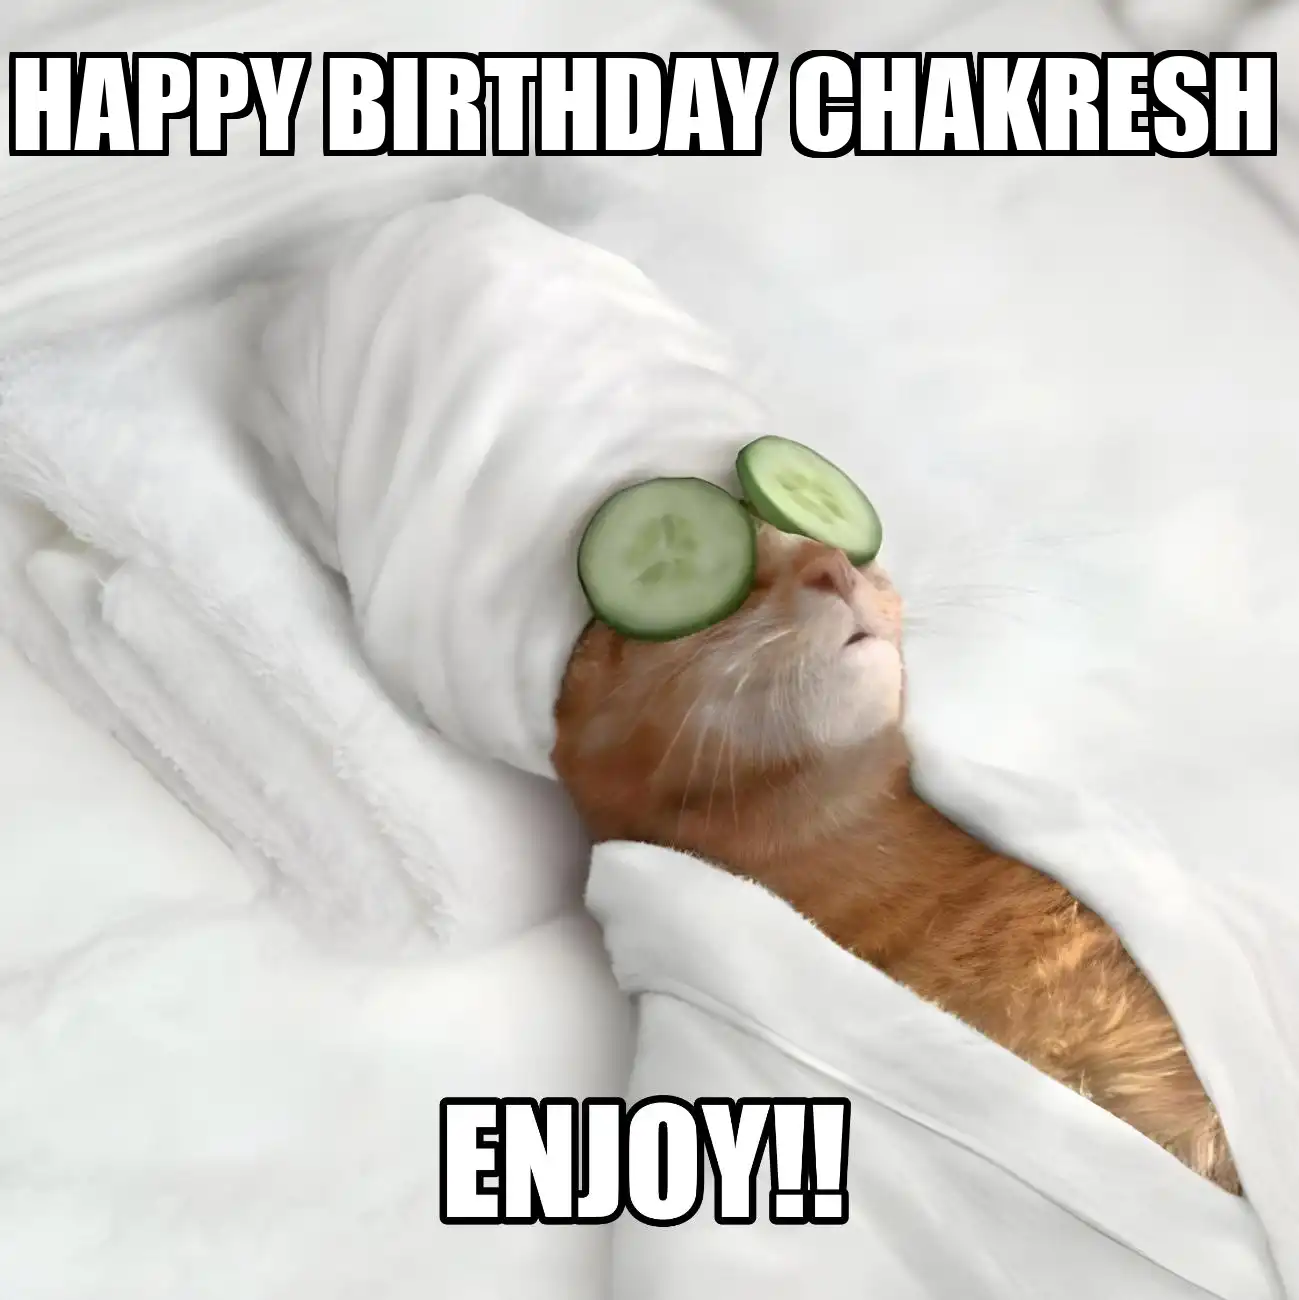 Happy Birthday Chakresh Enjoy Cat Meme